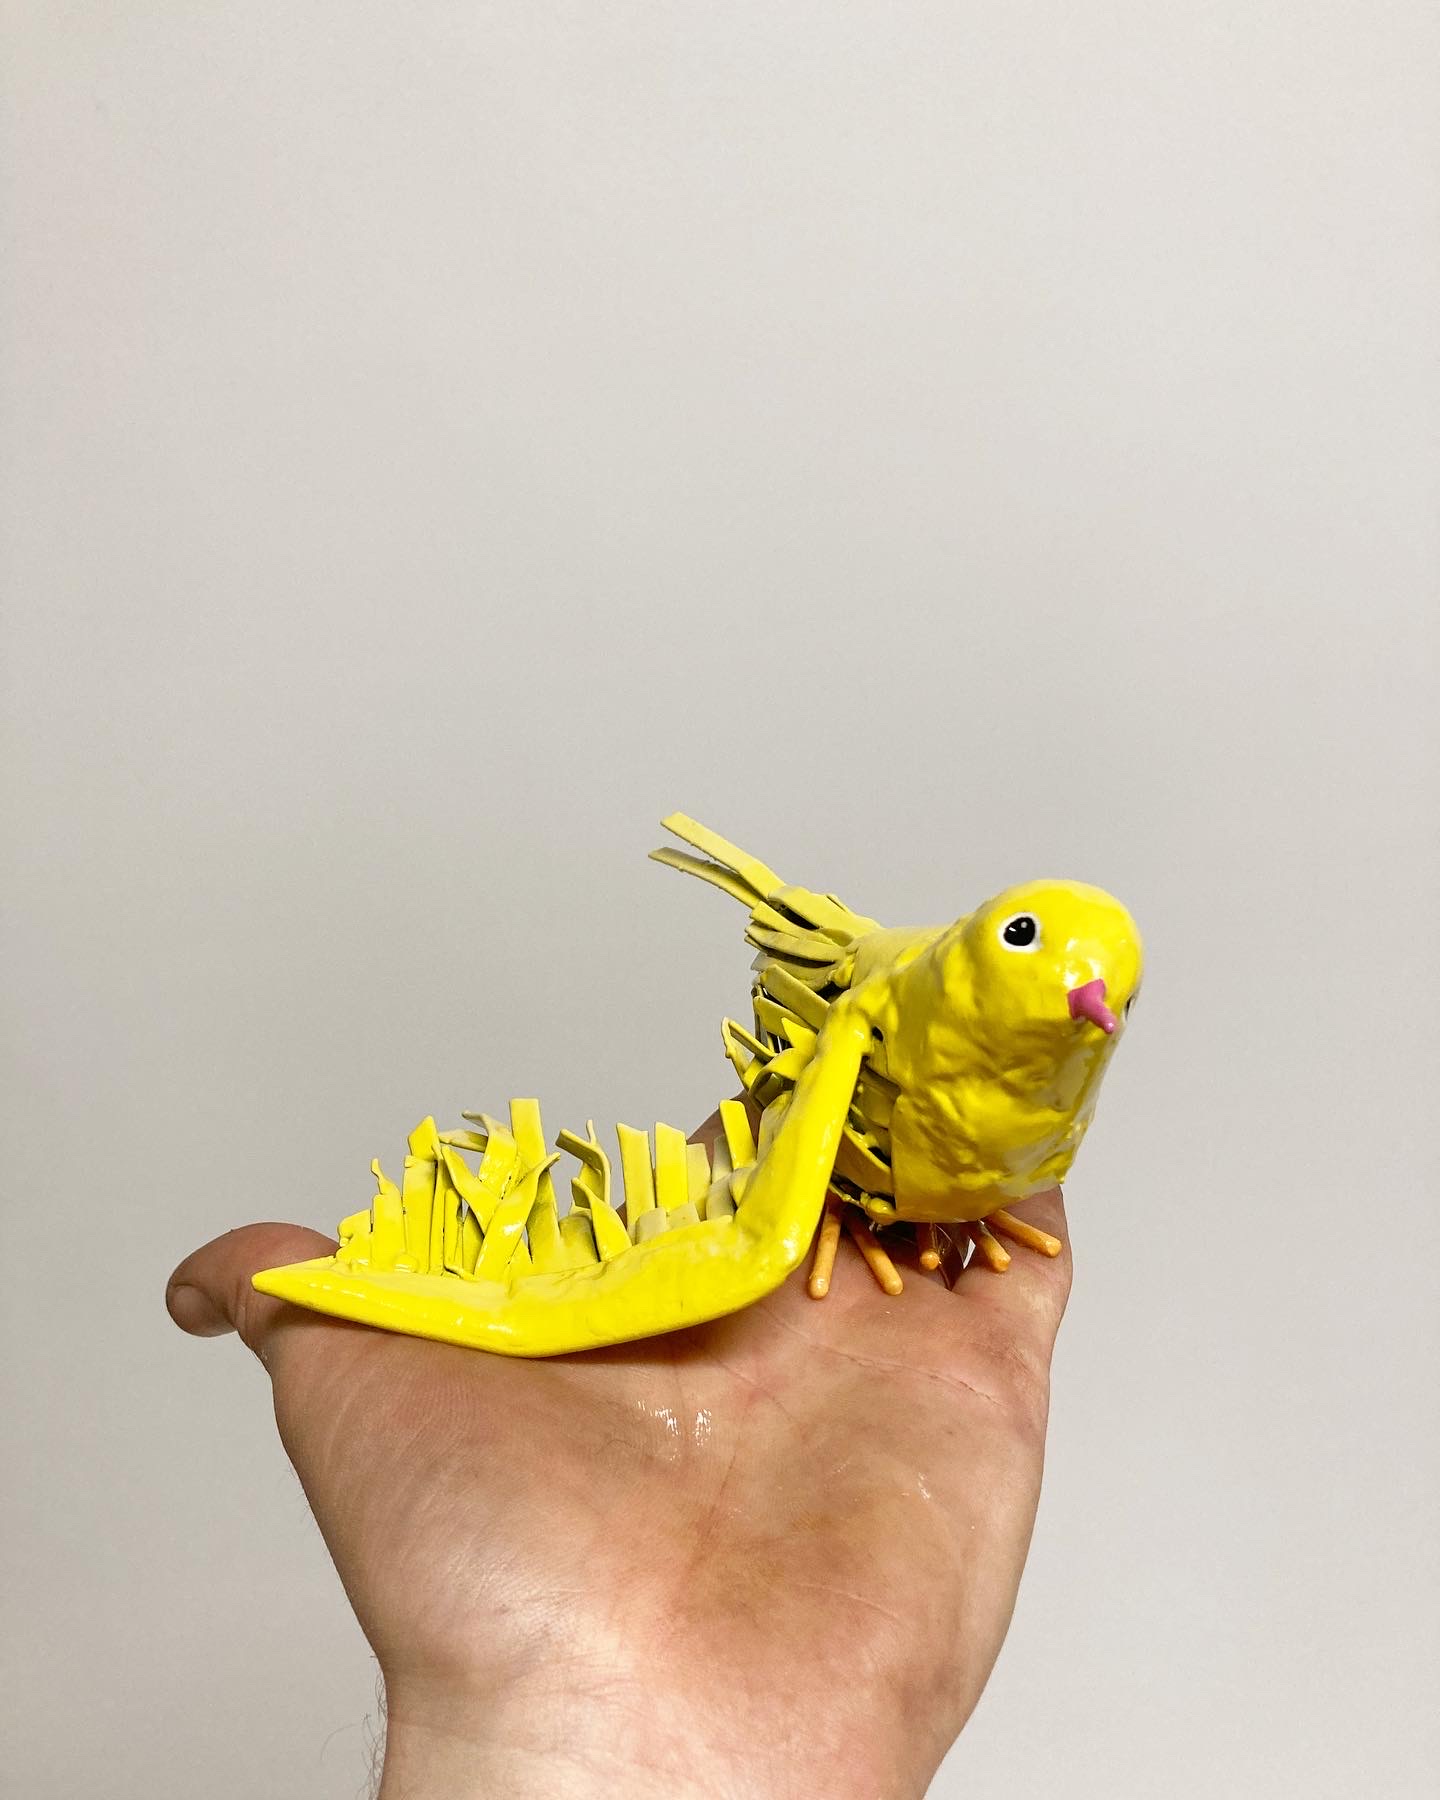 Fotografi av hand som håller liten skulptur av en gul fågel.